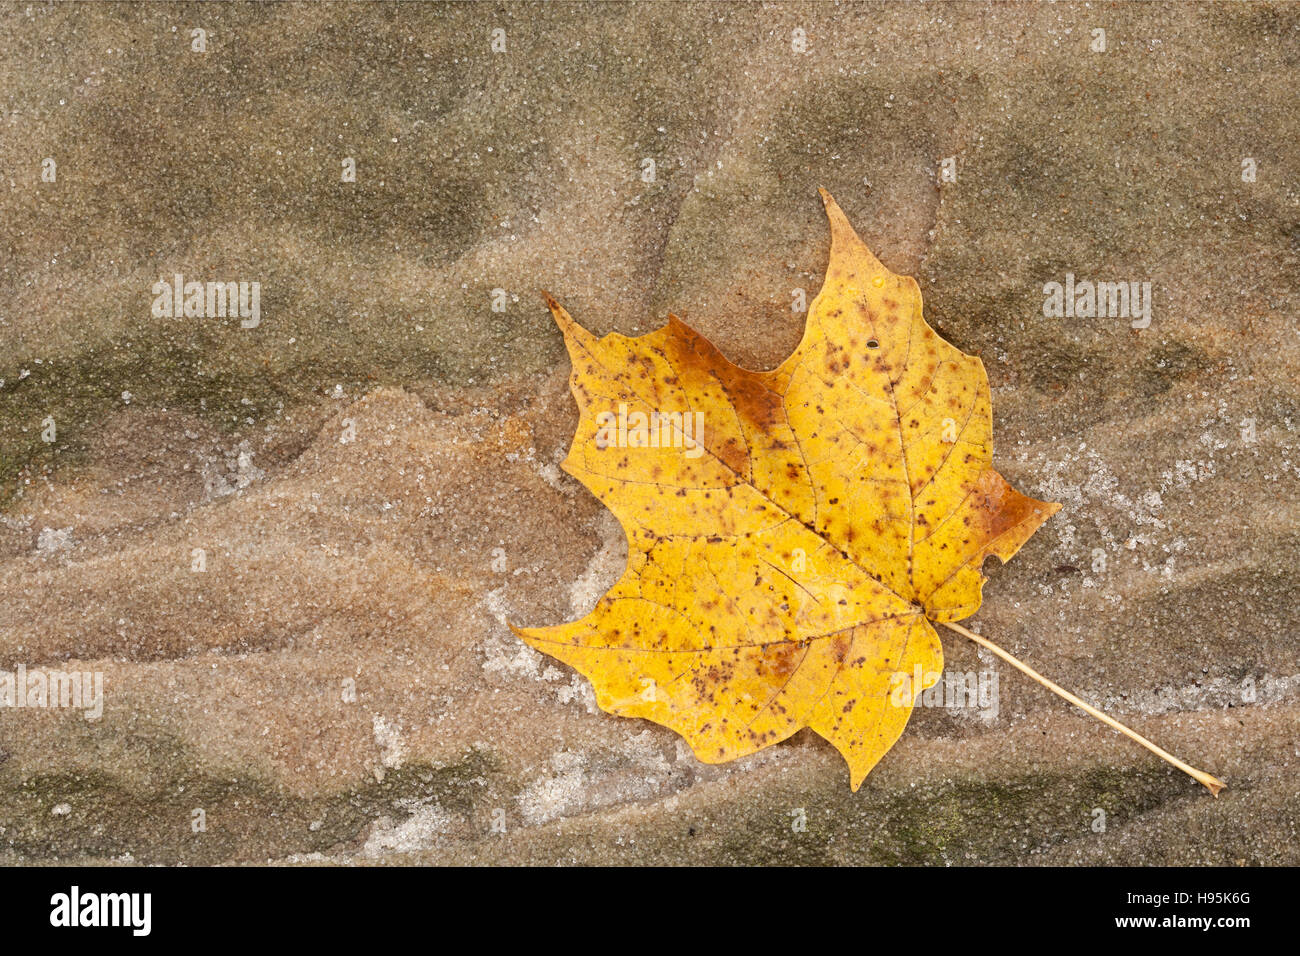 Luccicante come piccoli diamanti, i grani allentati di un masso di arenaria che circondano un autunno maple leaf. Foto Stock